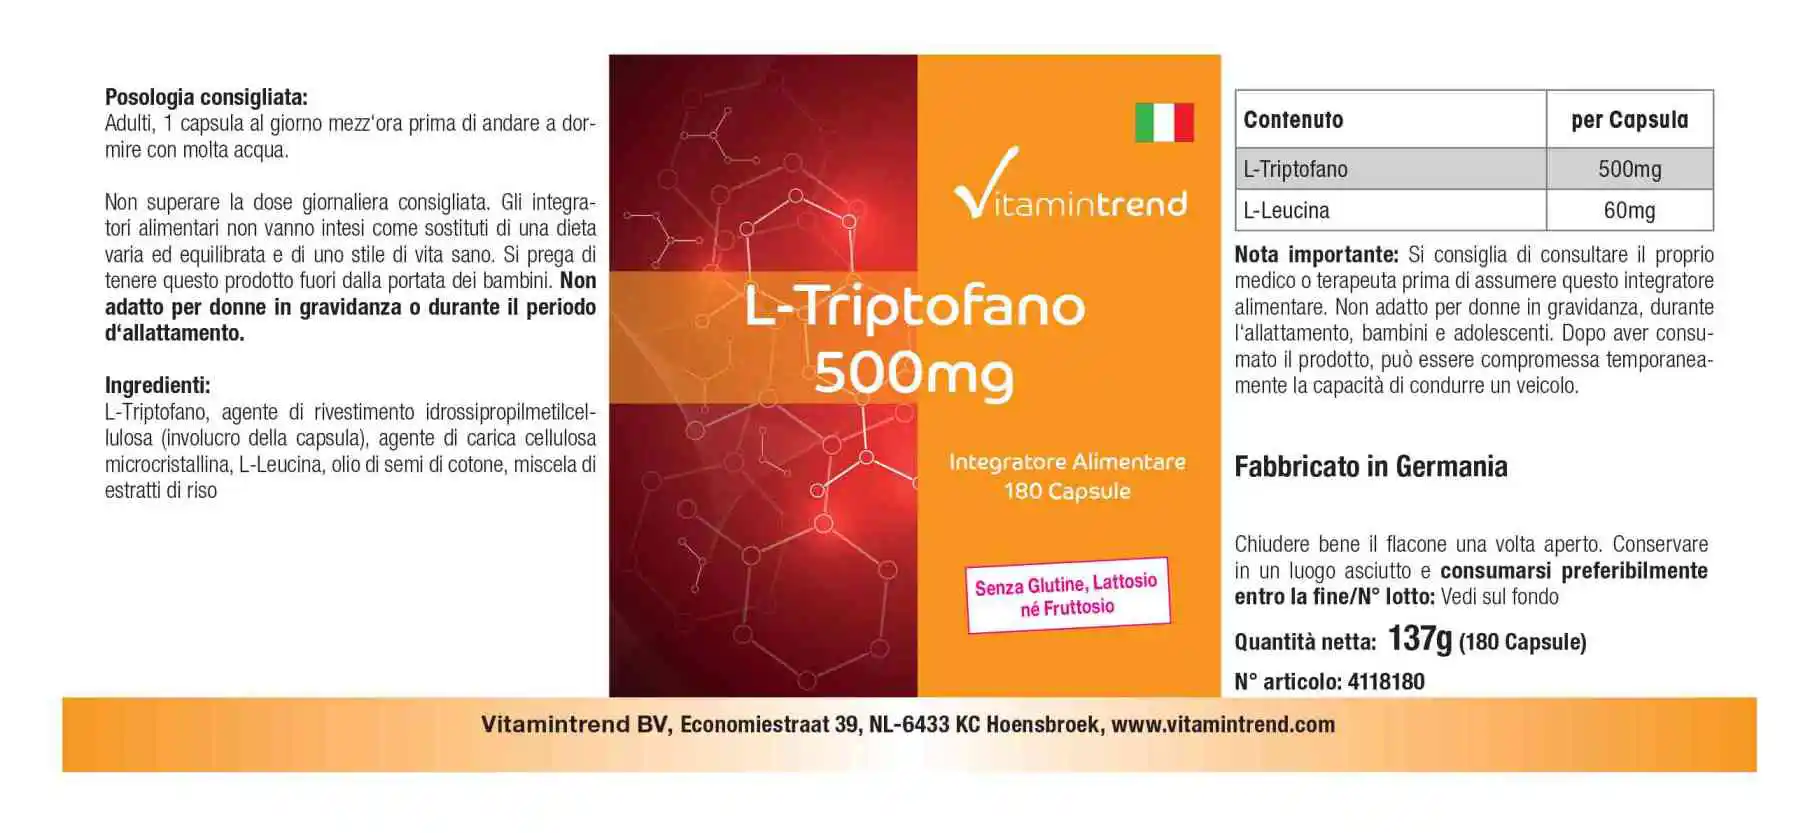 L-Tryptophan 500mg - vegan - 180 capsules - bulk pack